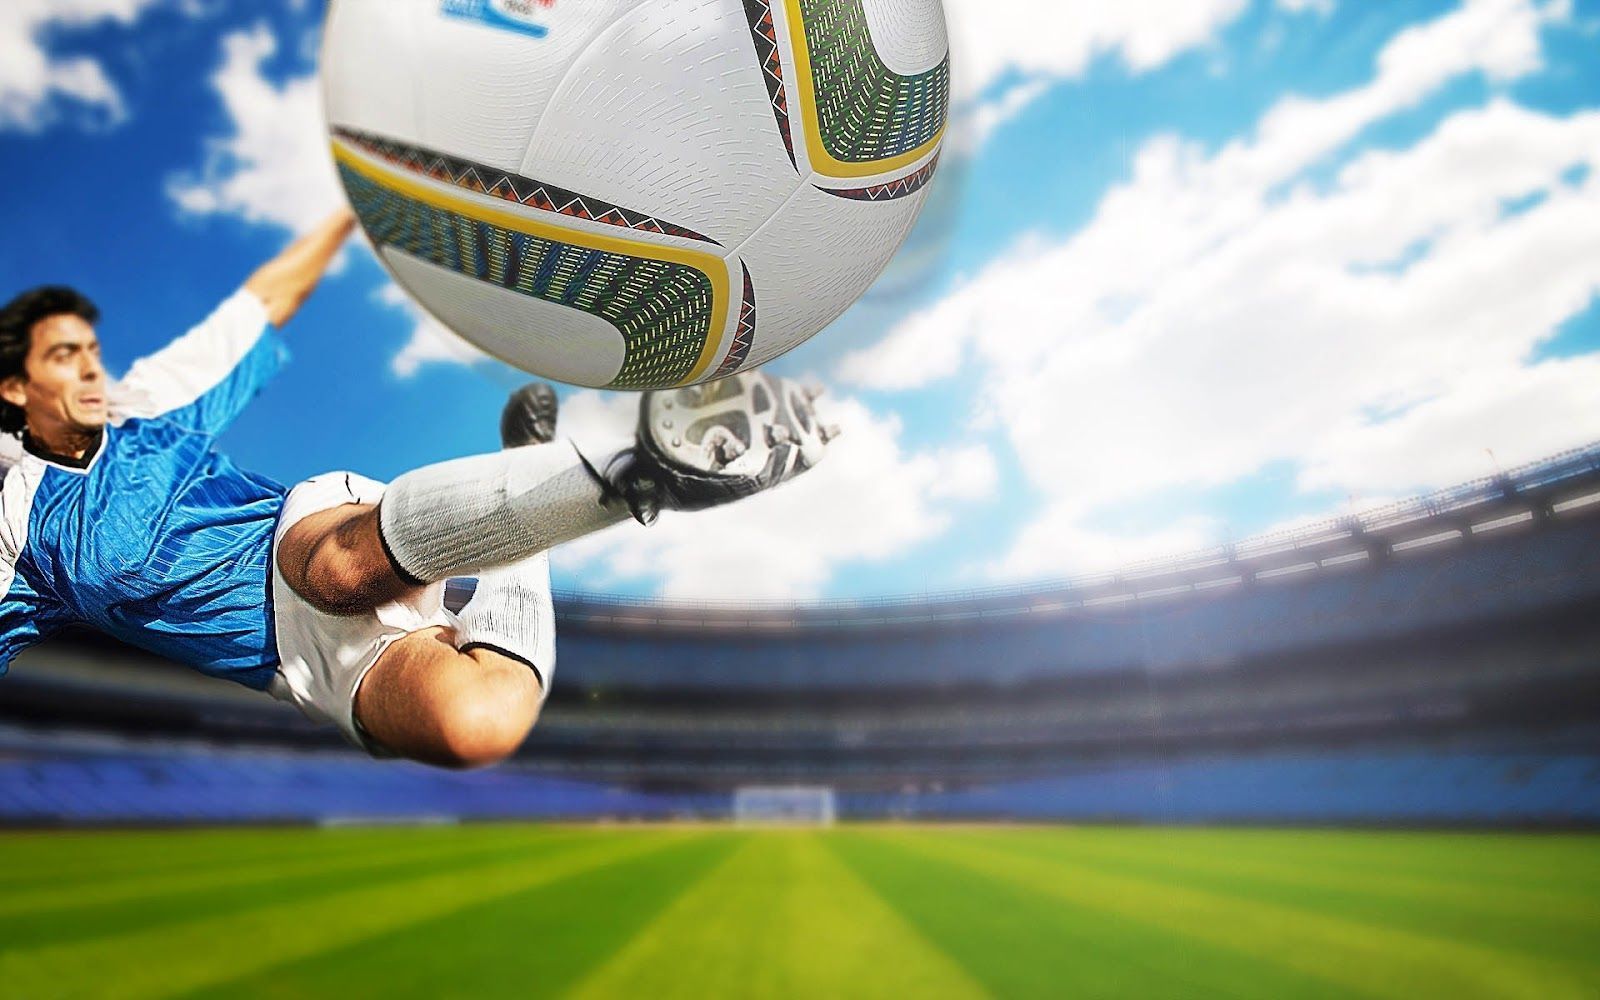 Download Soccer Ball Player Wallpaper 4209 1600x1000 px High ...